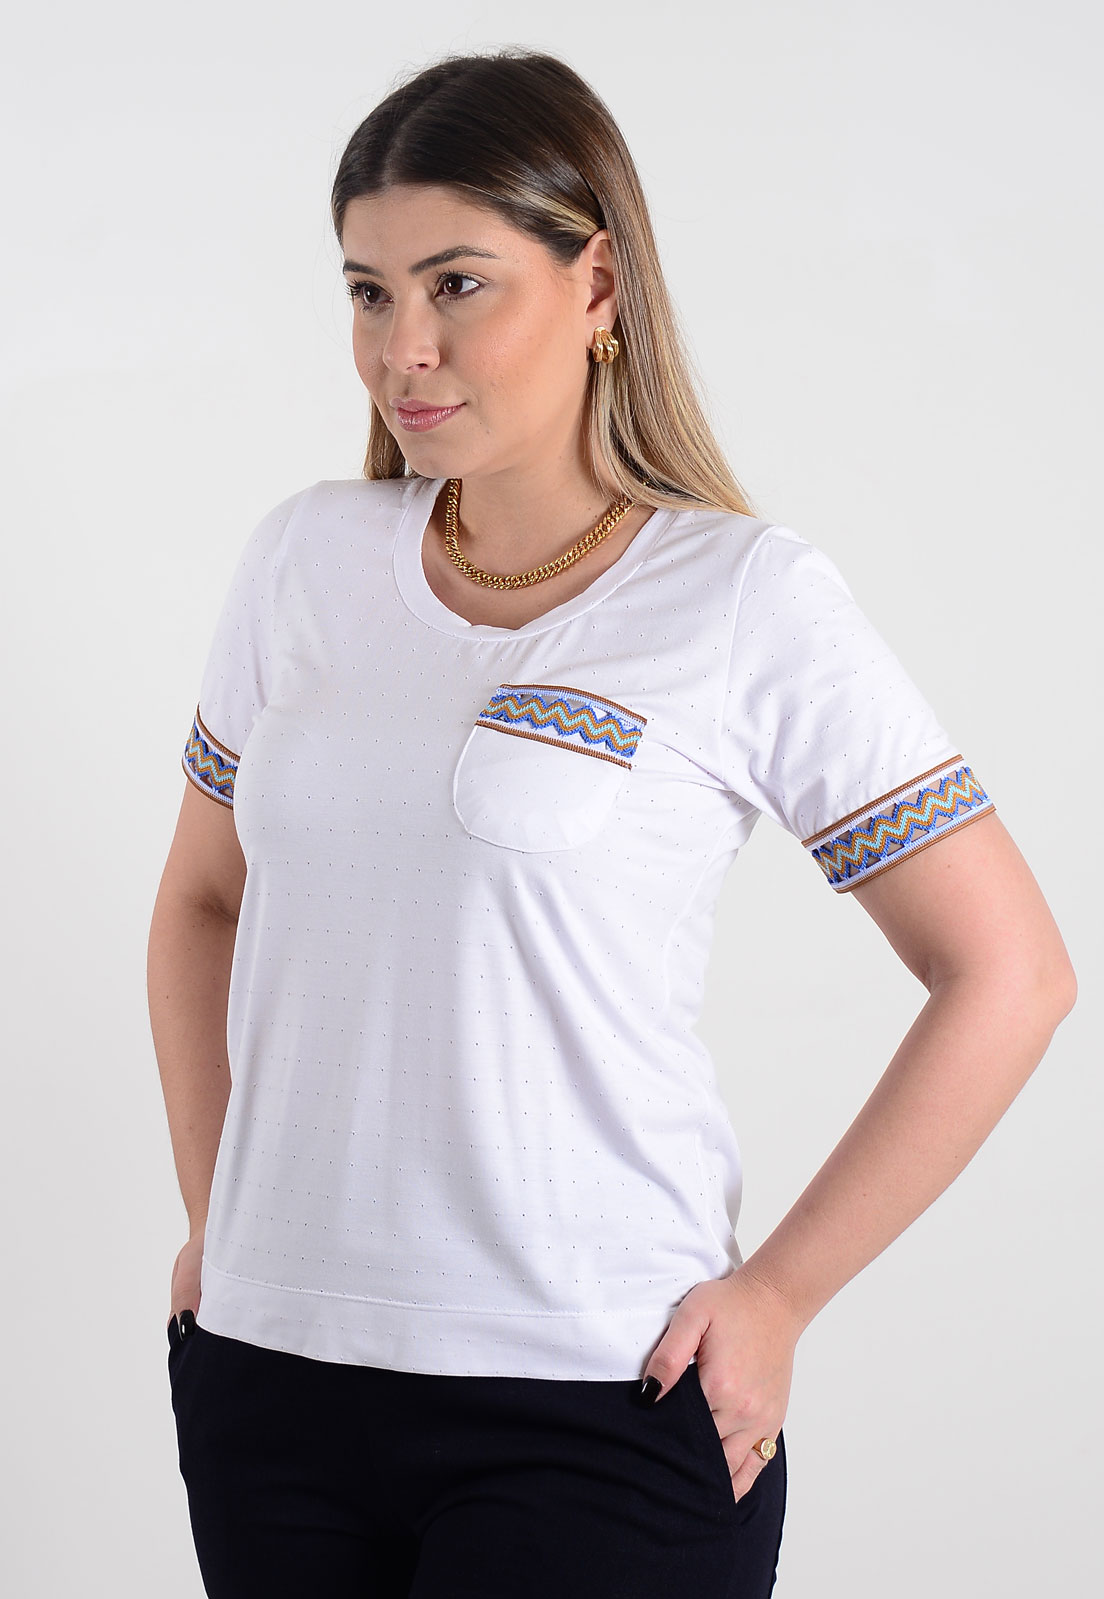 T-shirt Mamorena de malha com detalhe de elástico